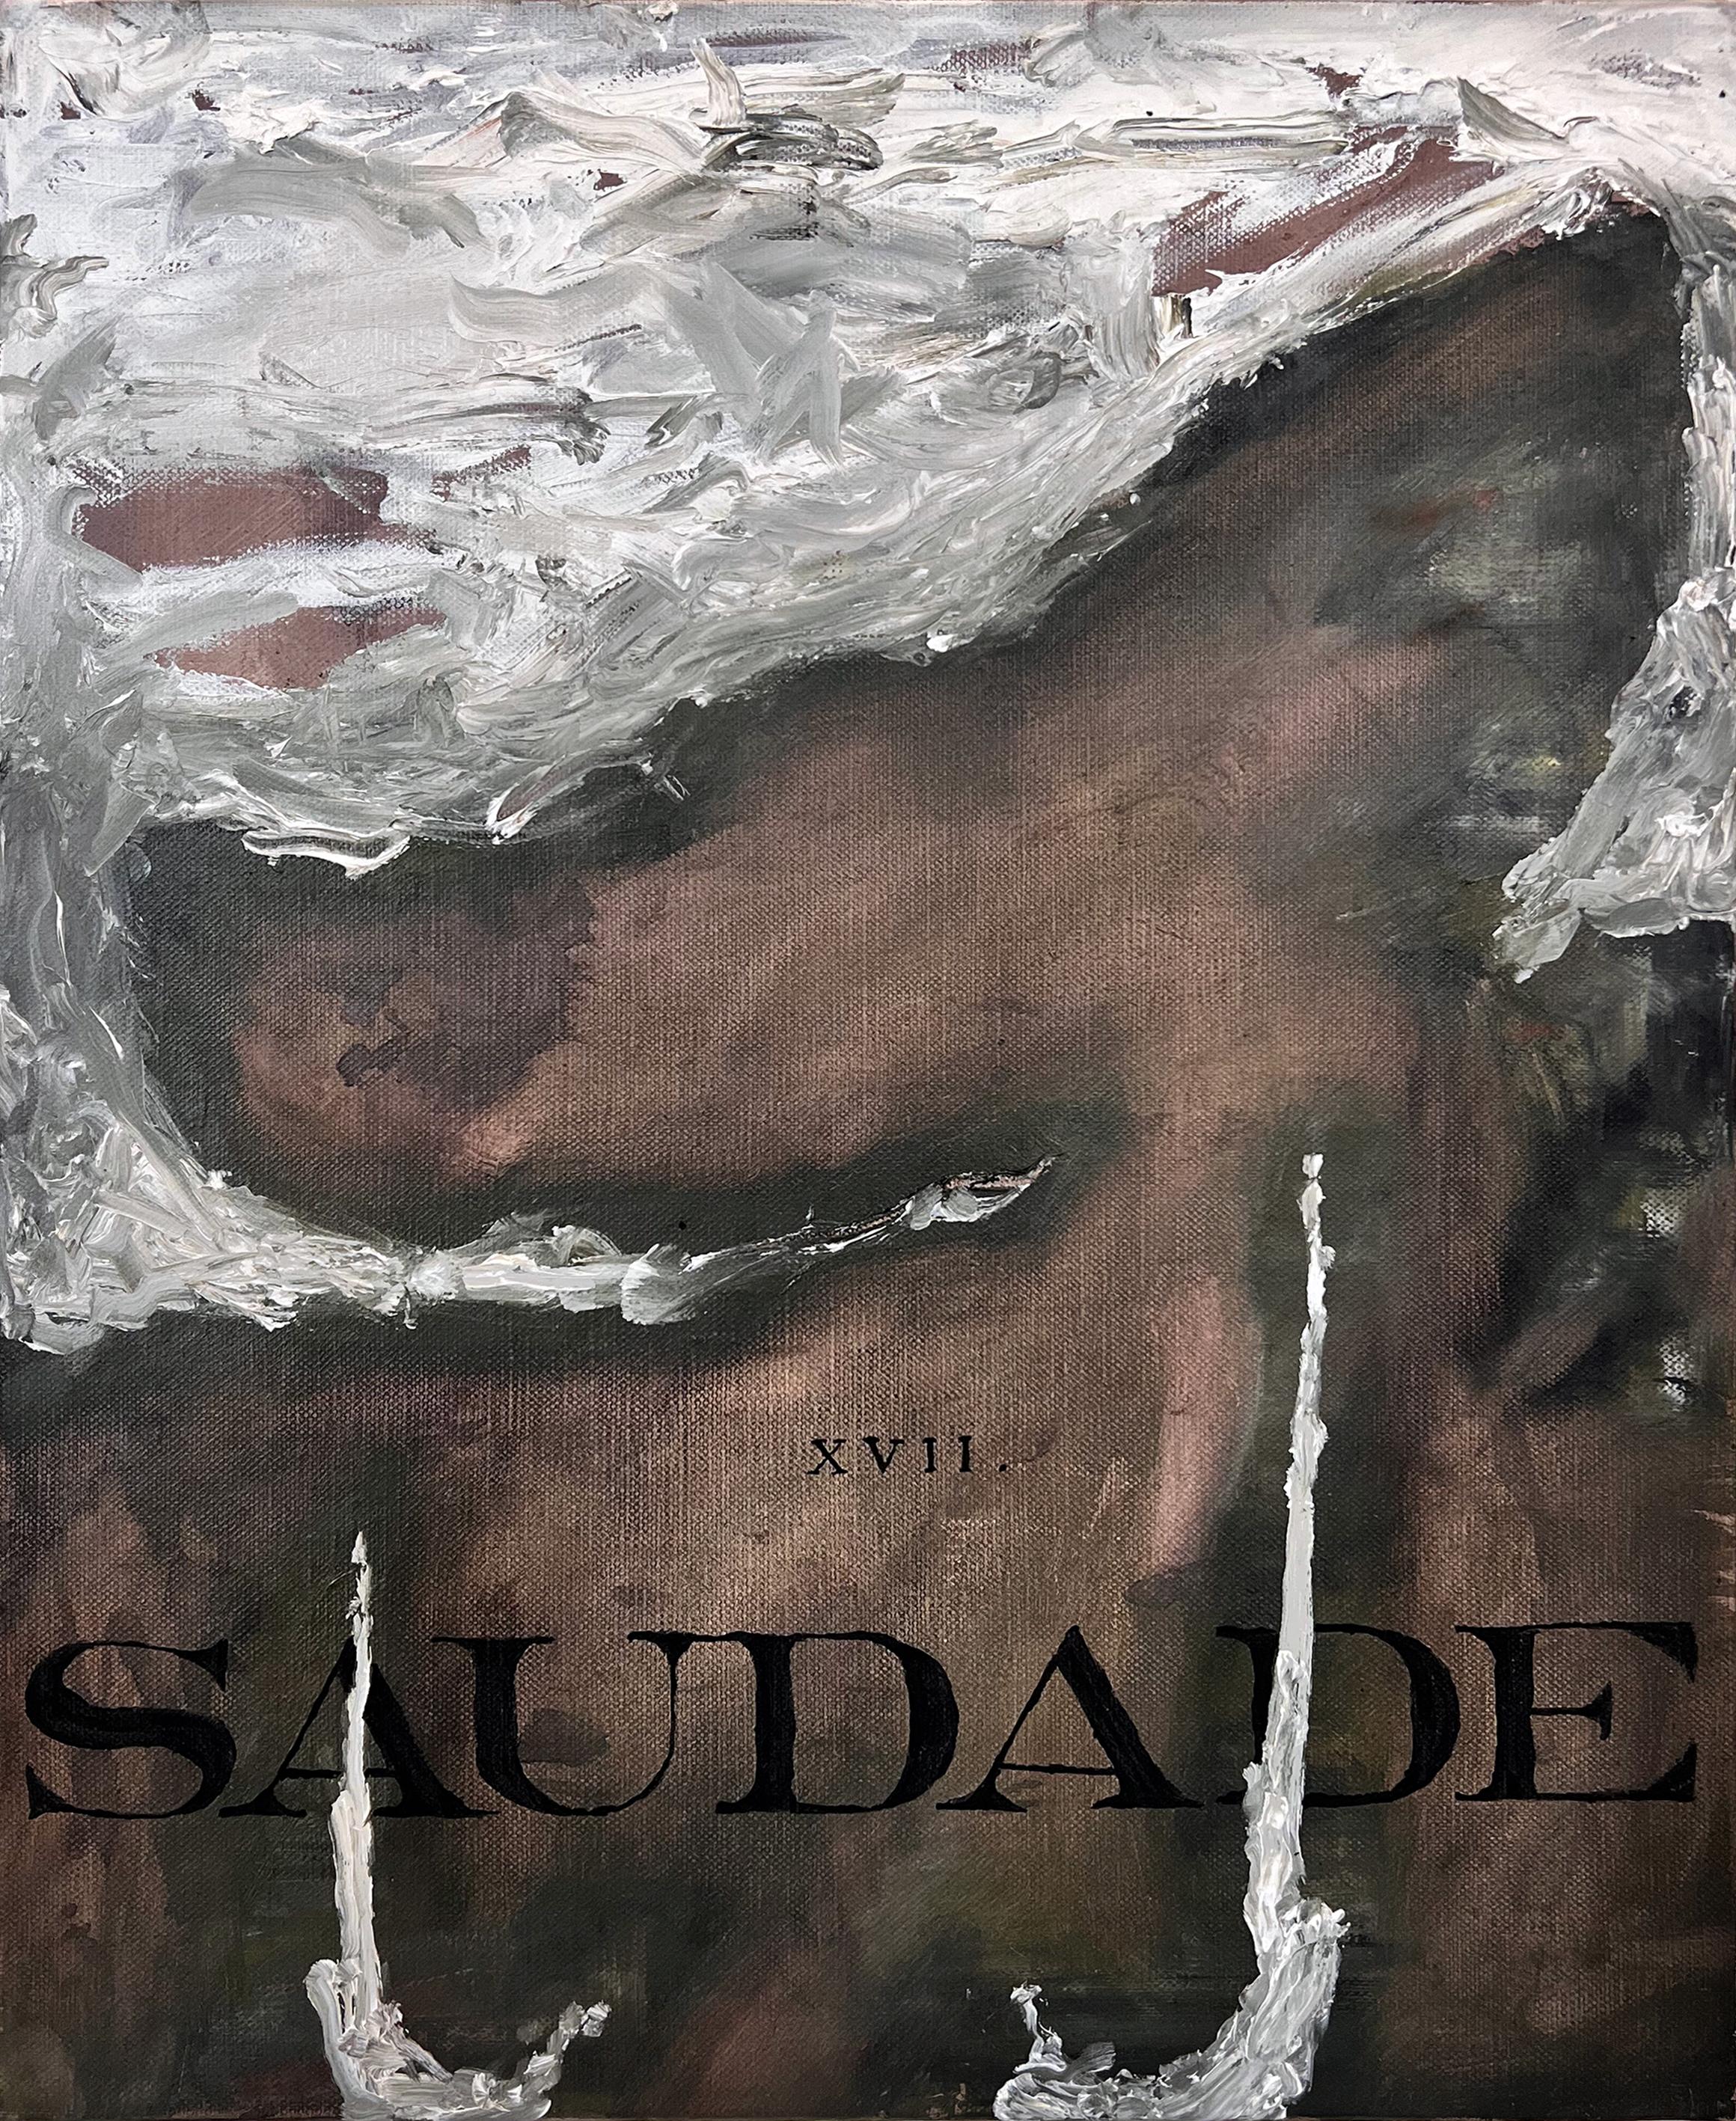 Nicholas Evans Abstract Painting – „Saudade“ (schwarz-weiß, reichhaltig, Text, Schrift, abstrakt, surreal, natürlich, neutral)